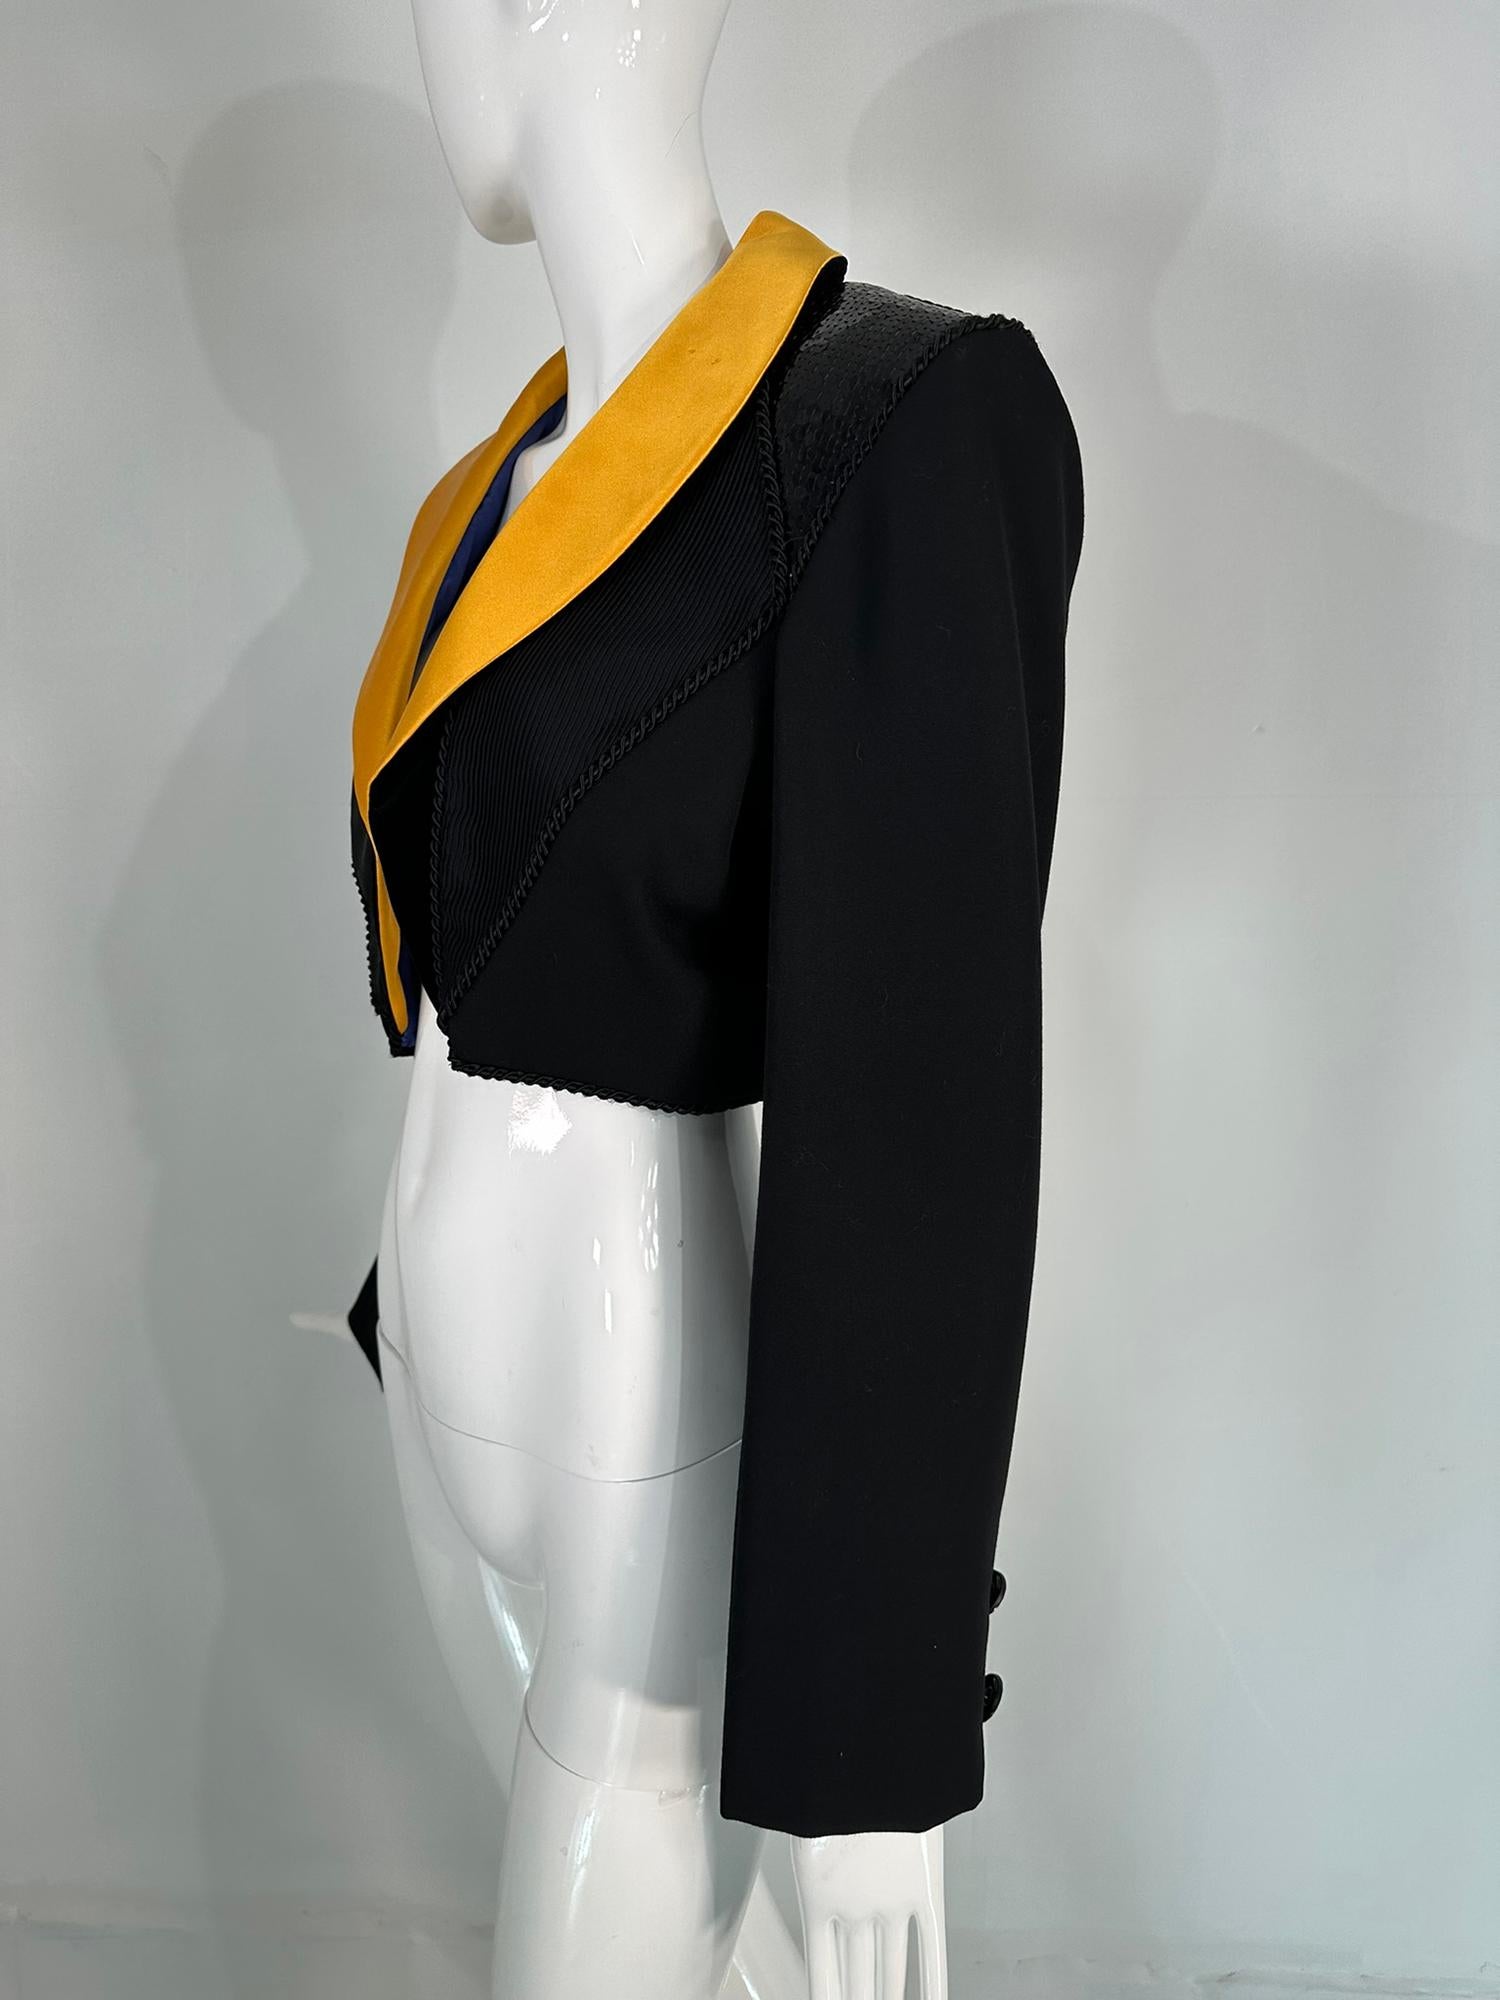 Yves Saint Laurent Rive Gauche - Veste courte en satin jaune à sequins noirs, années 1990 Pour femmes en vente